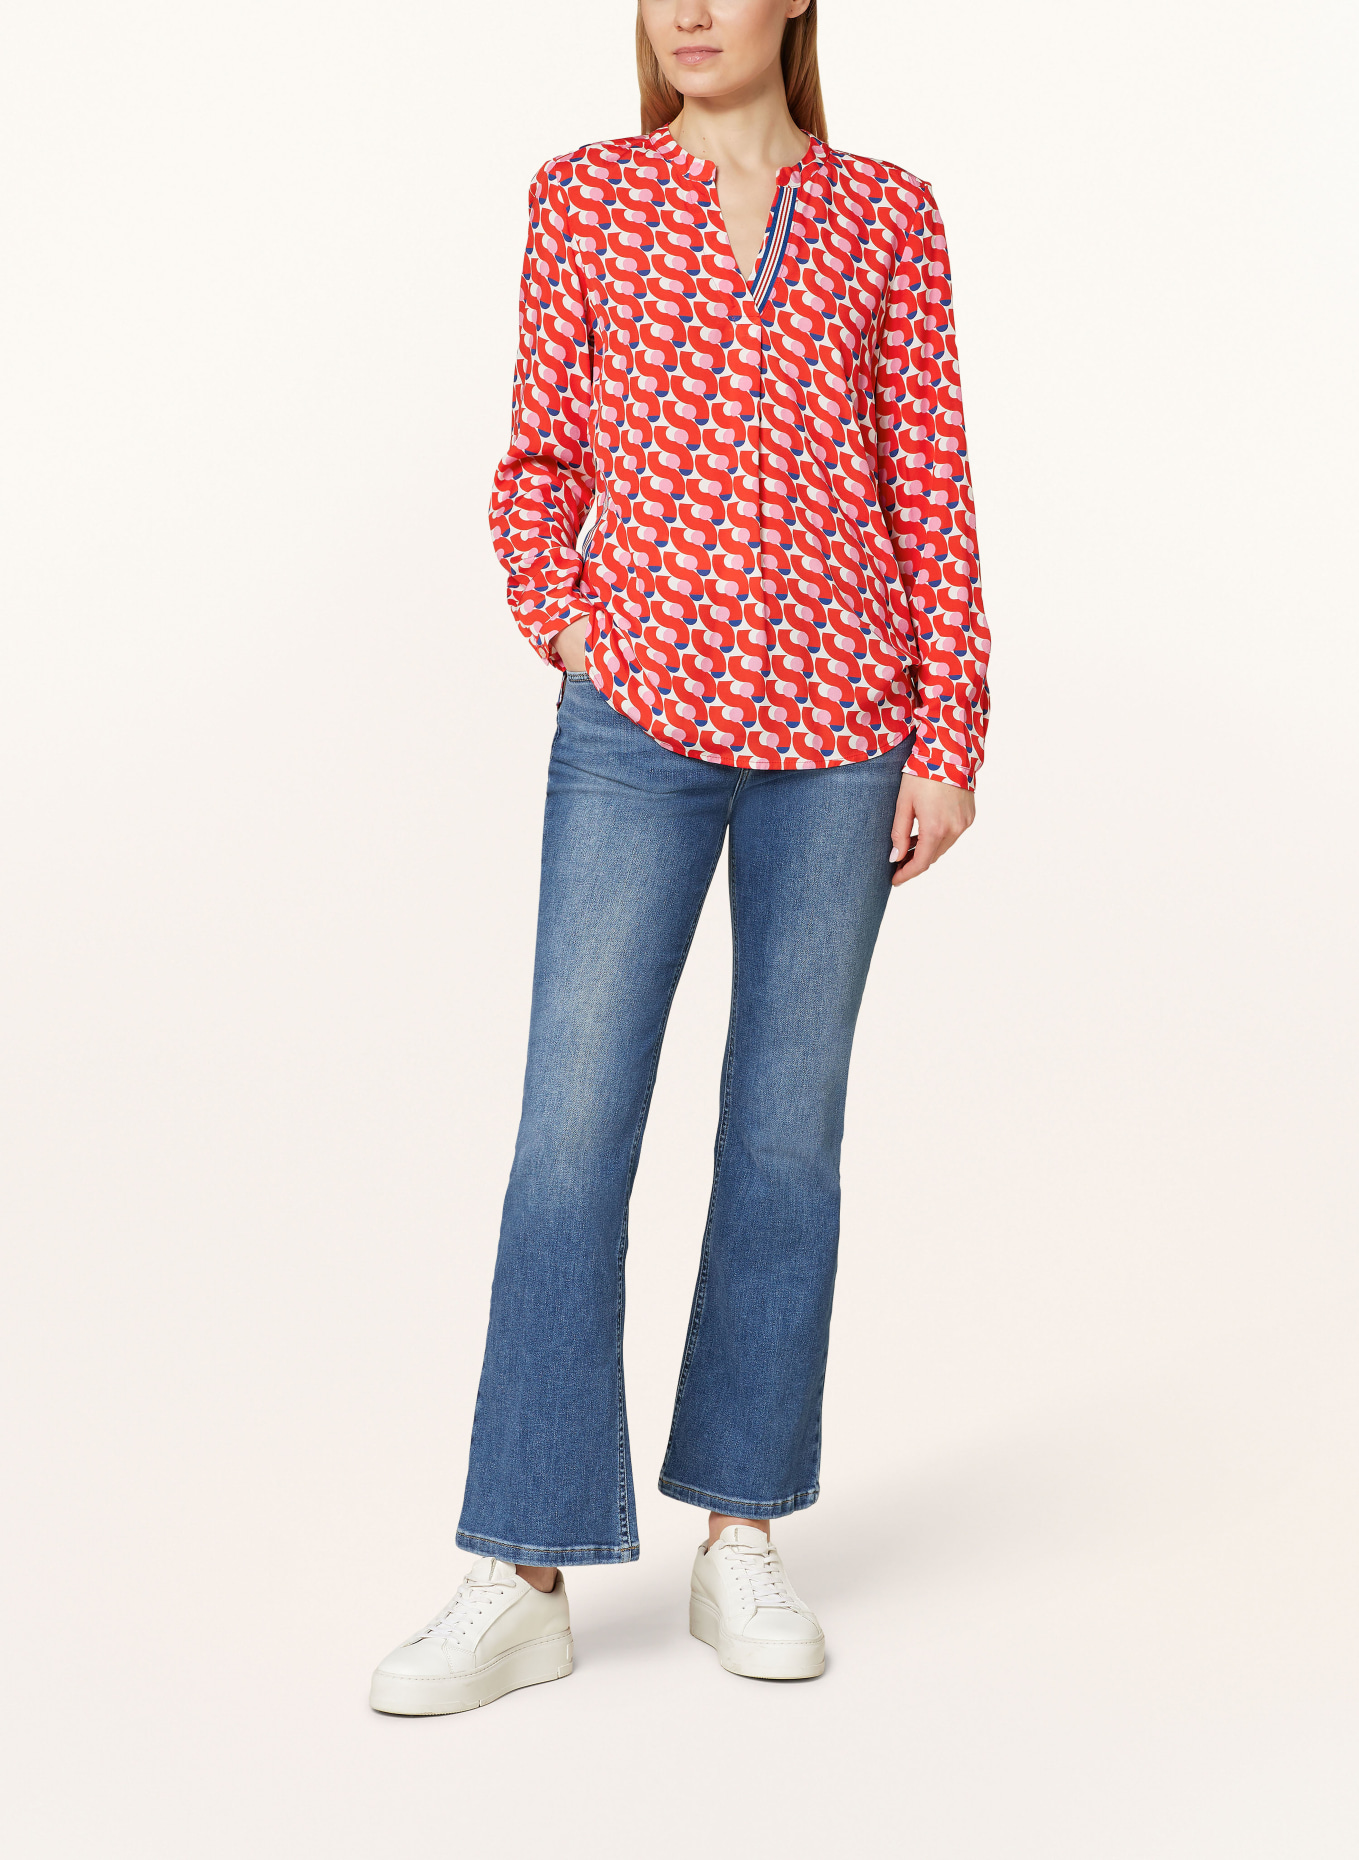 Emily VAN DEN BERGH Shirt blouse, Color: RED/ PINK/ BLUE (Image 2)